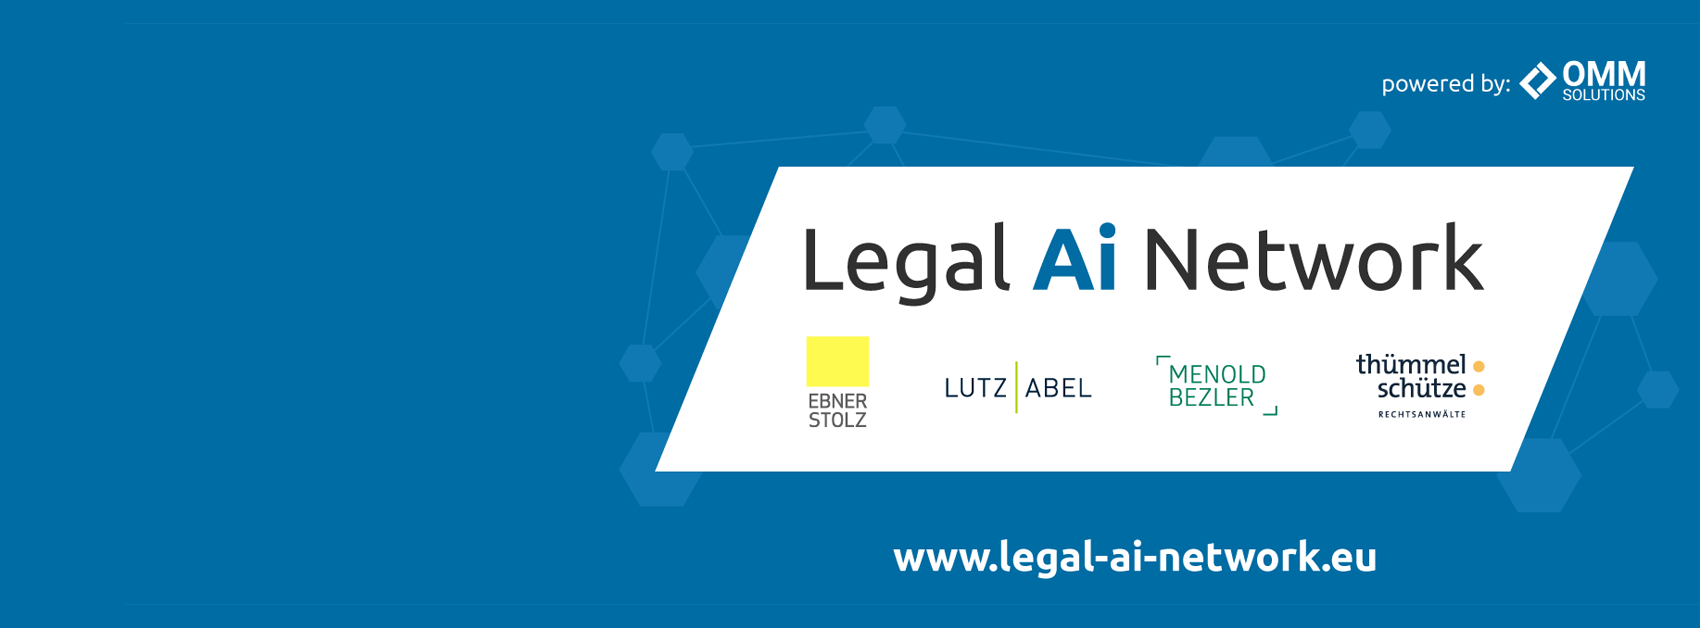 Legal Ai Network